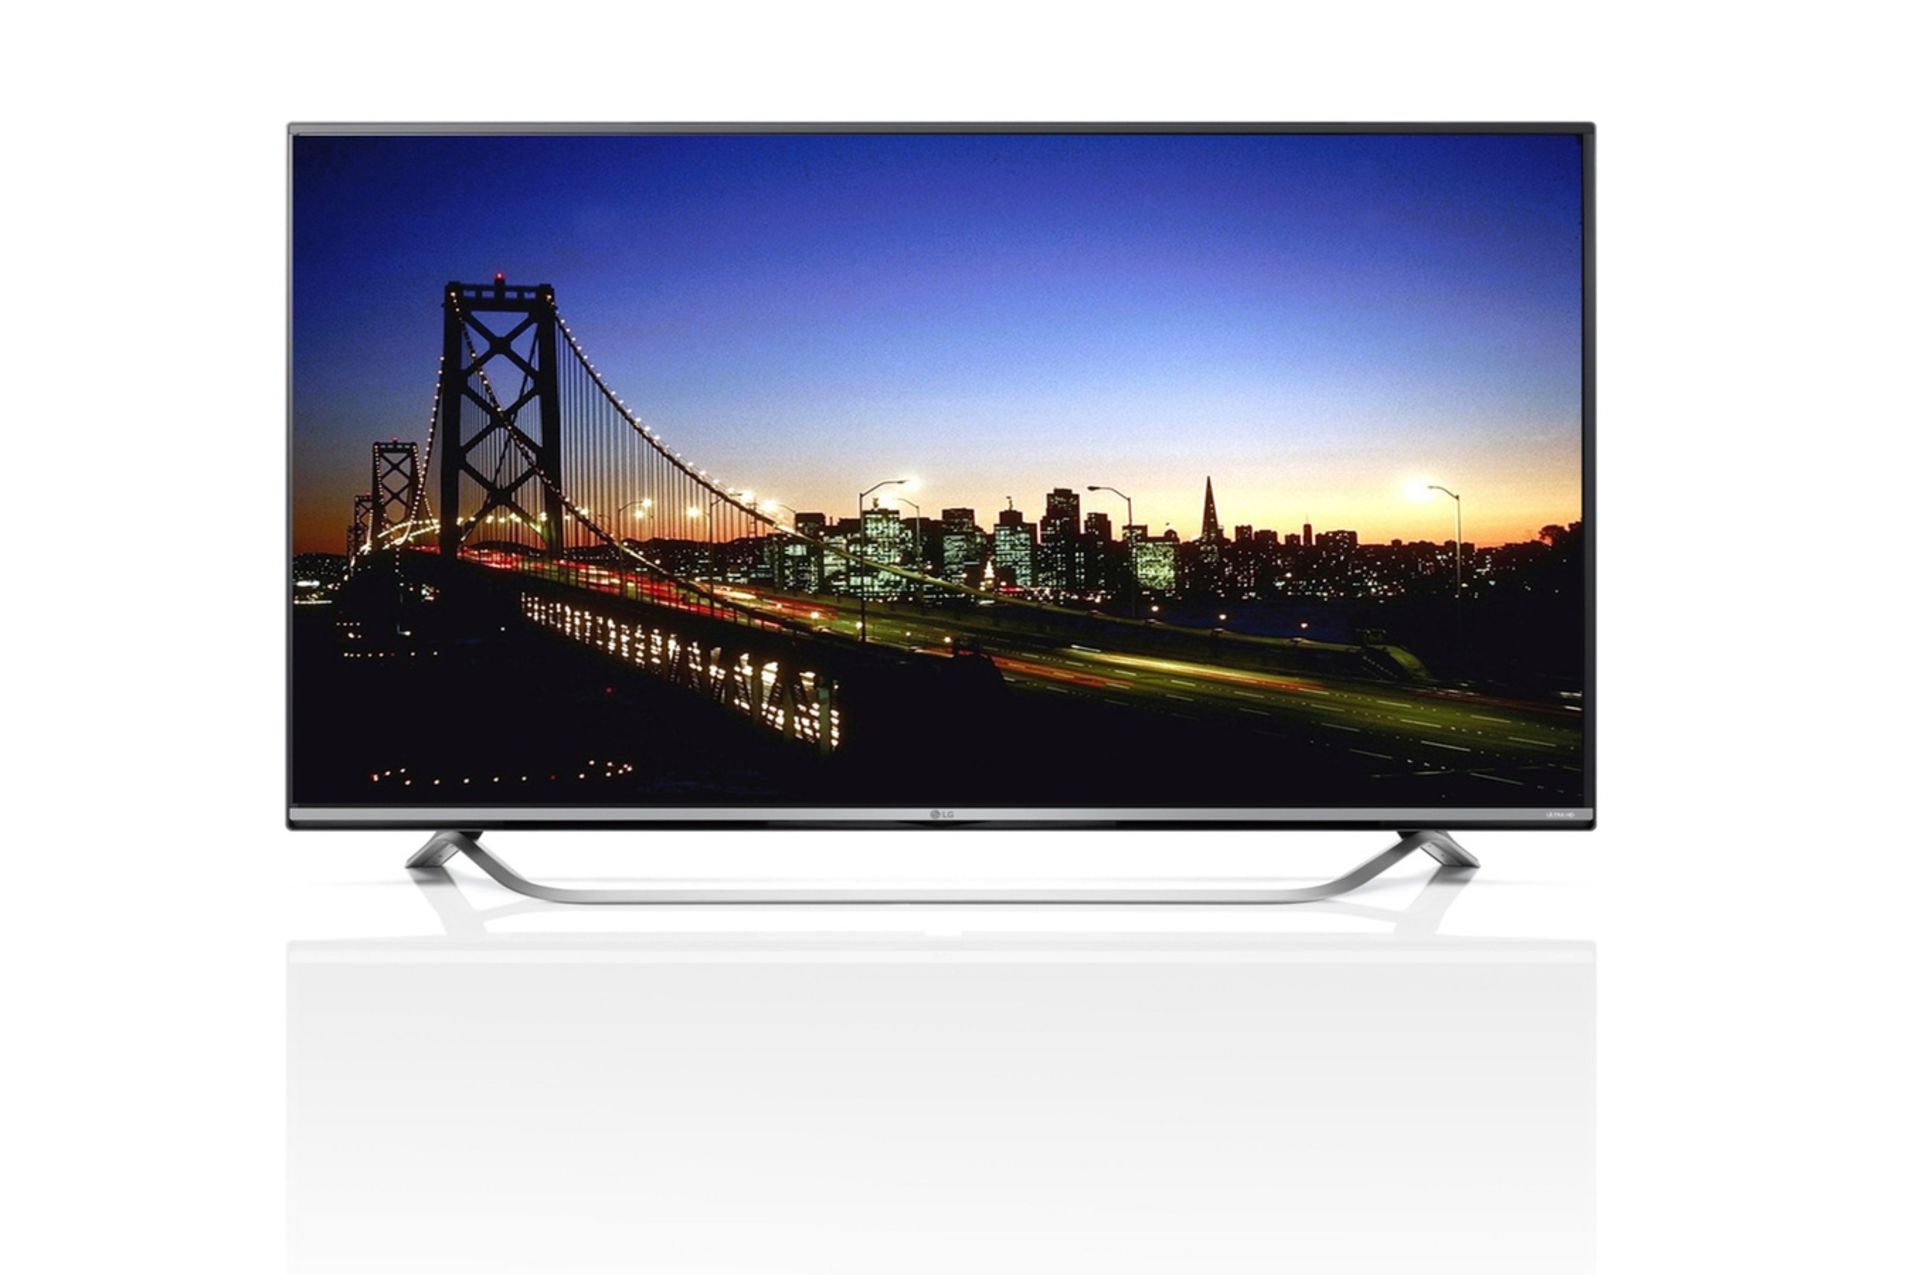 V Grade A 55UF778V LG 55" 4K Ultra HD Smart TV - WebOS 2.0 - Ultra Slim